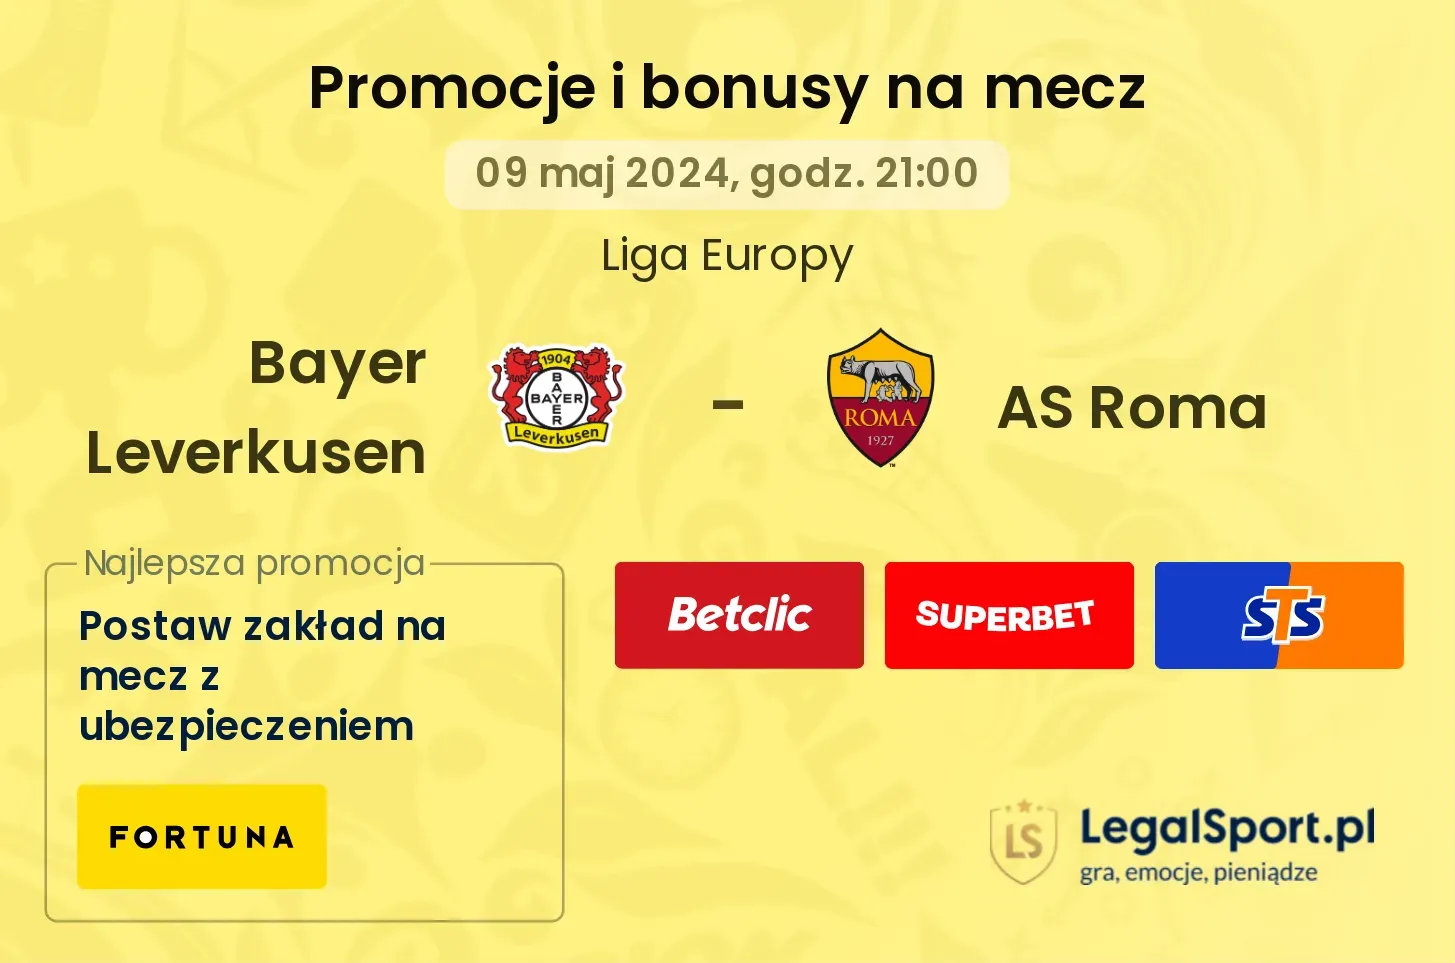 Bayer Leverkusen - AS Roma promocje bonusy na mecz